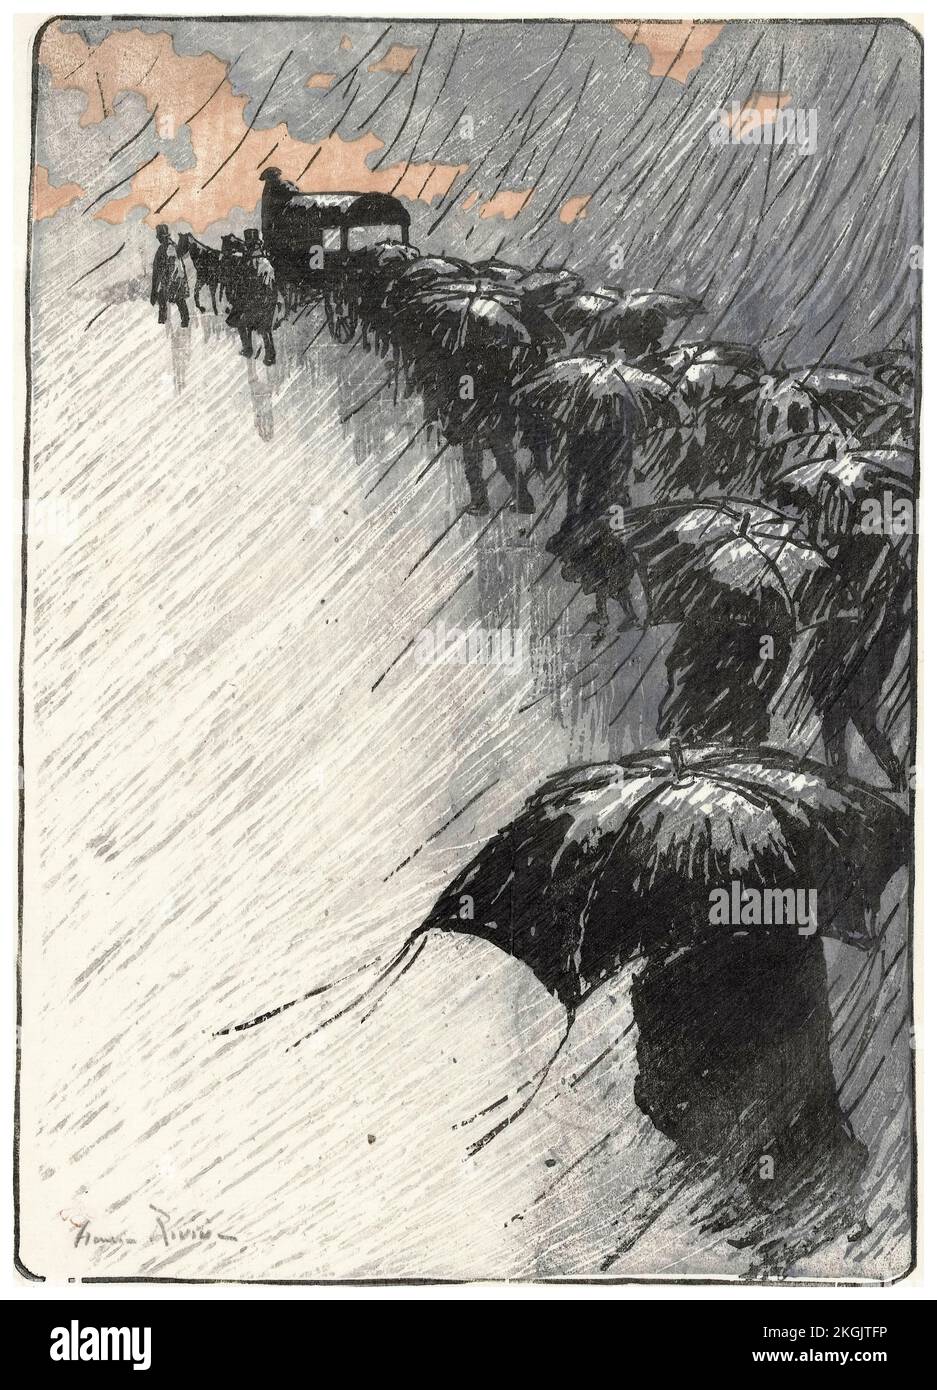 Henri Rivière, il funerale con ombrelli, stampa litografica, 1891 Foto Stock